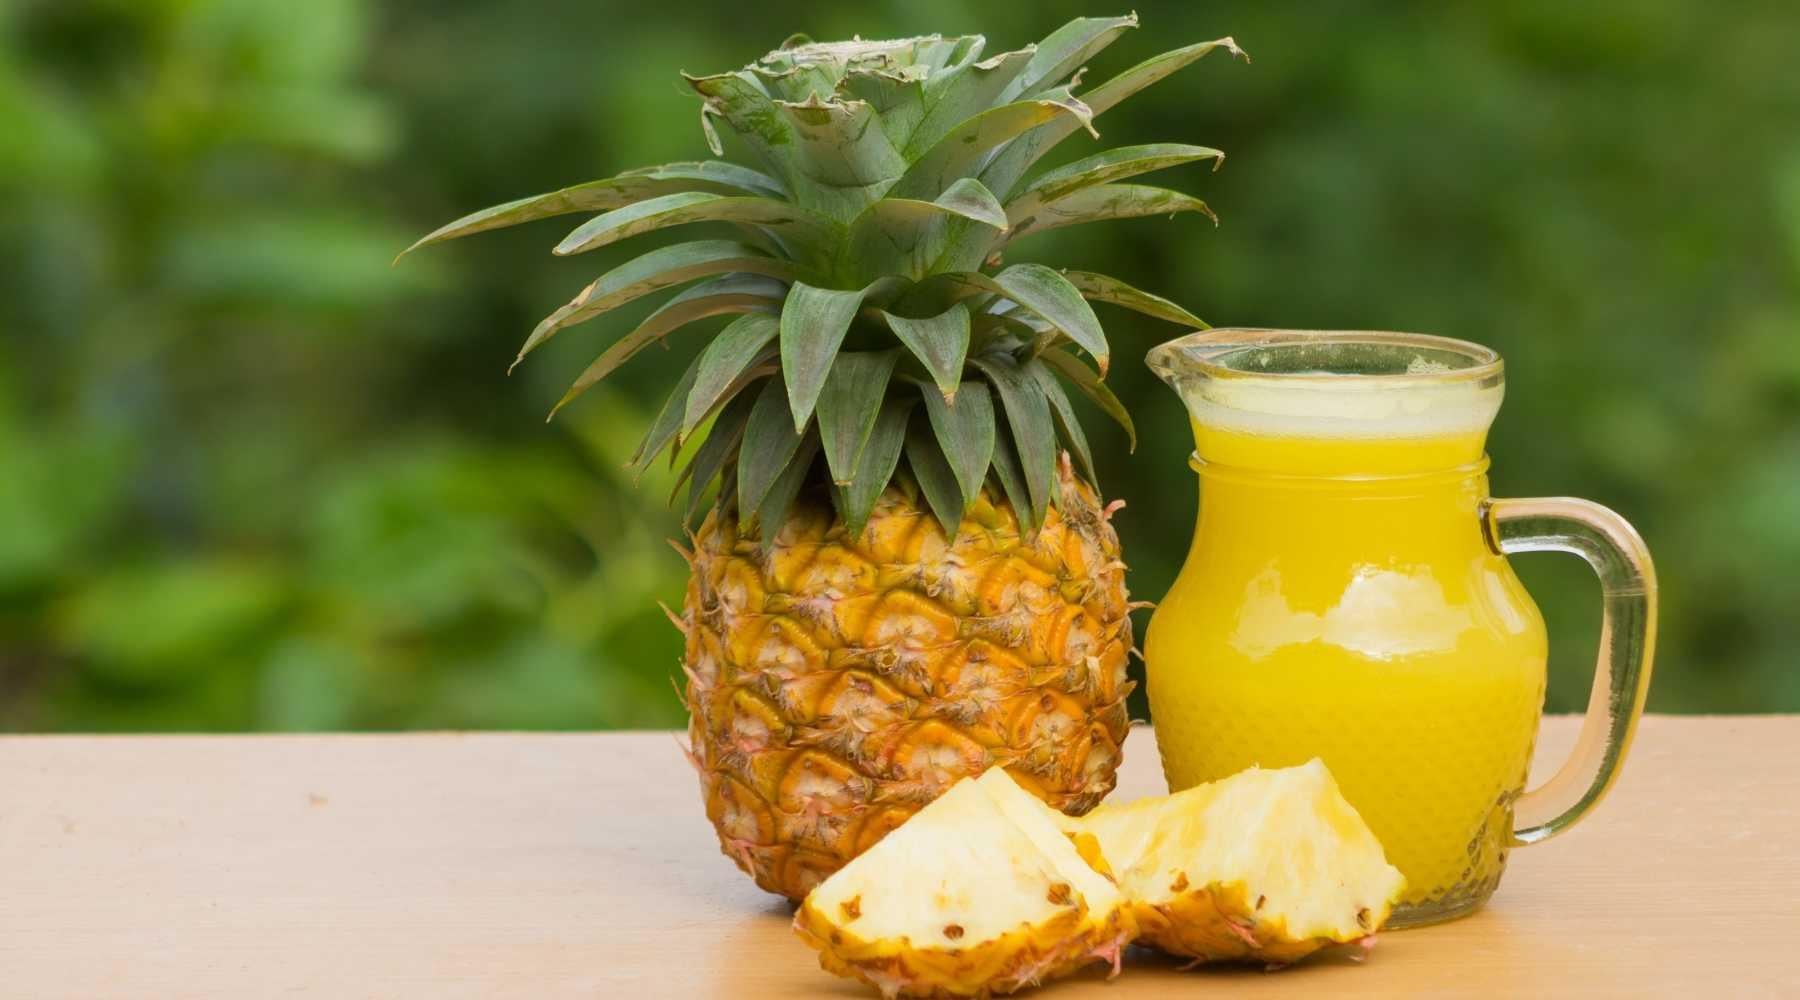 tasty-pineapple-juice-recipe-to-improve-sleep-little-west.jpg?v=1654547407